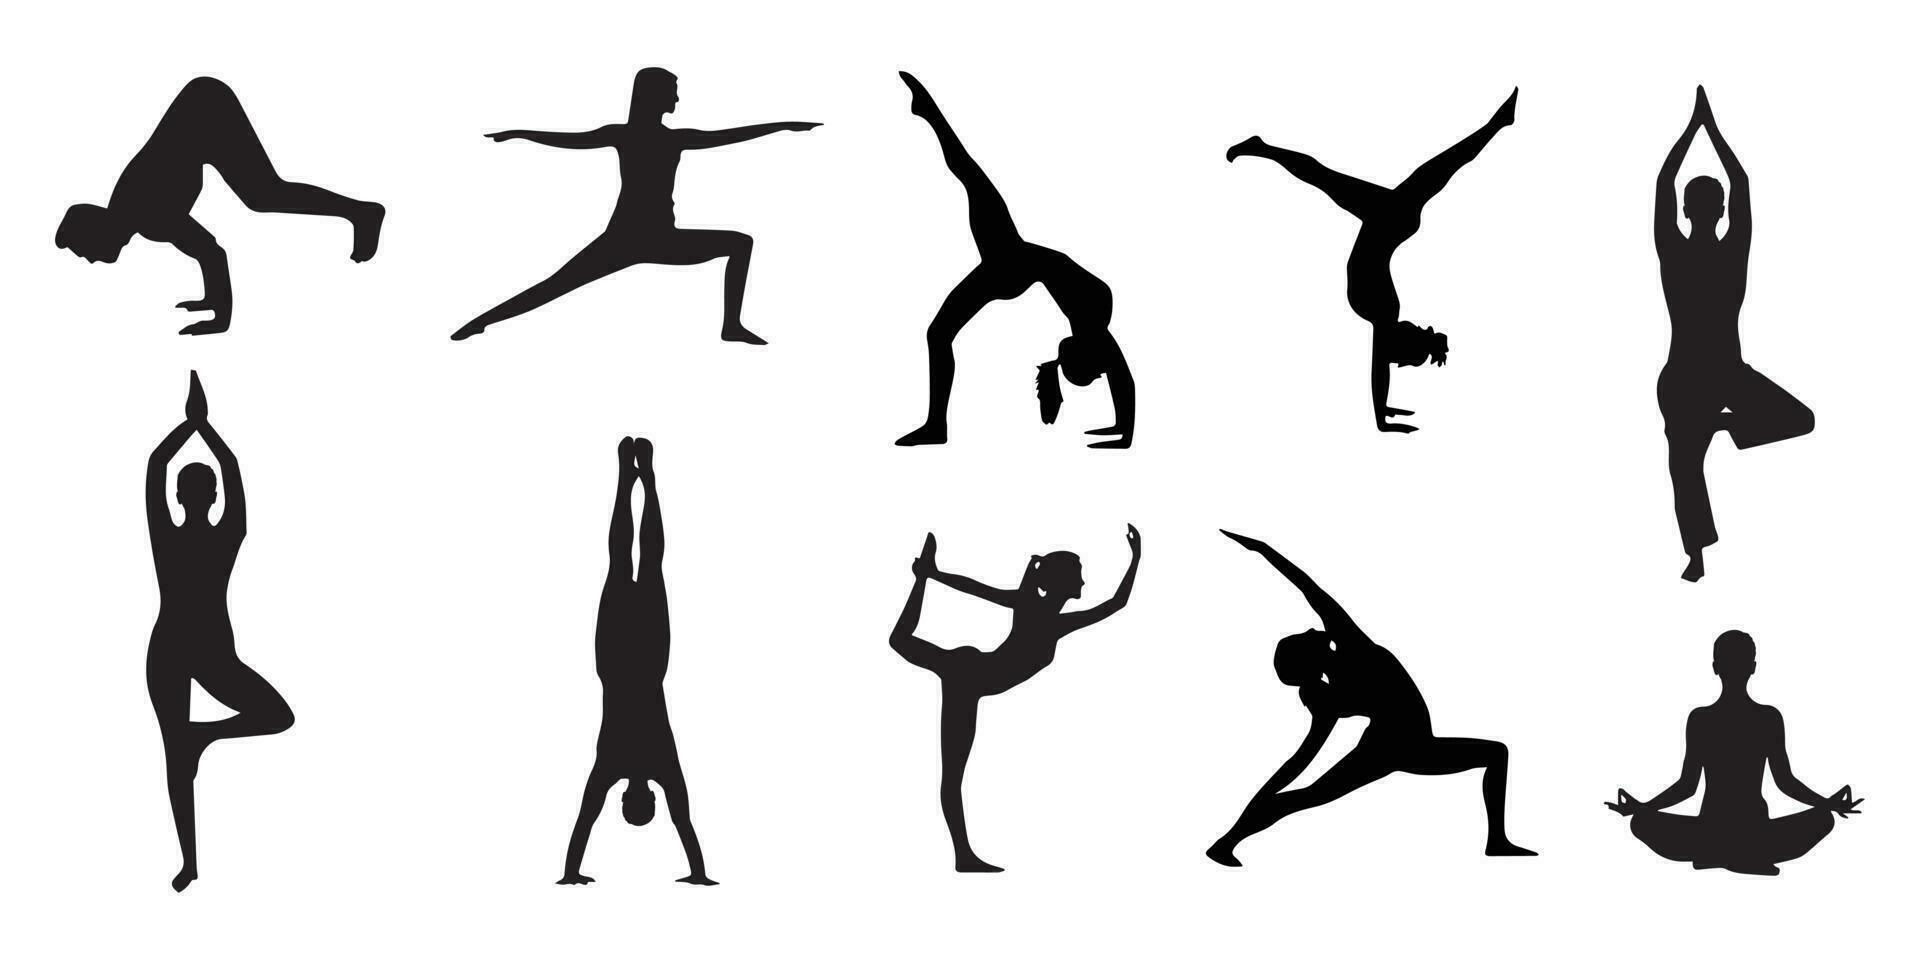 ioga poses todos diferente artes vetor Arquivo